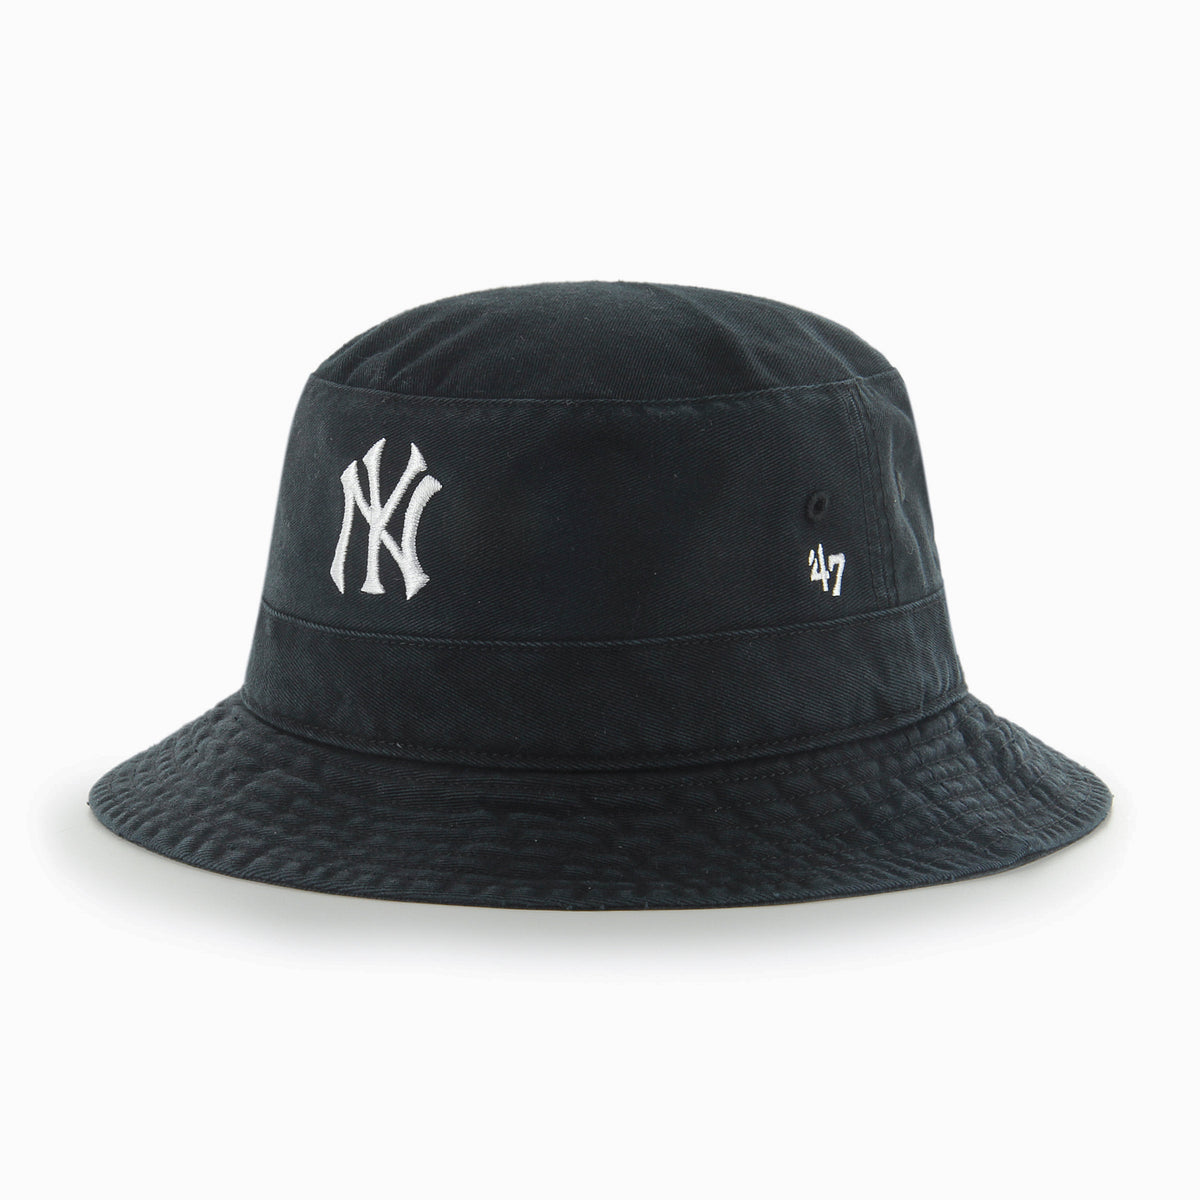 כובע –BUCKET 47 NY-47-One size-נאקו